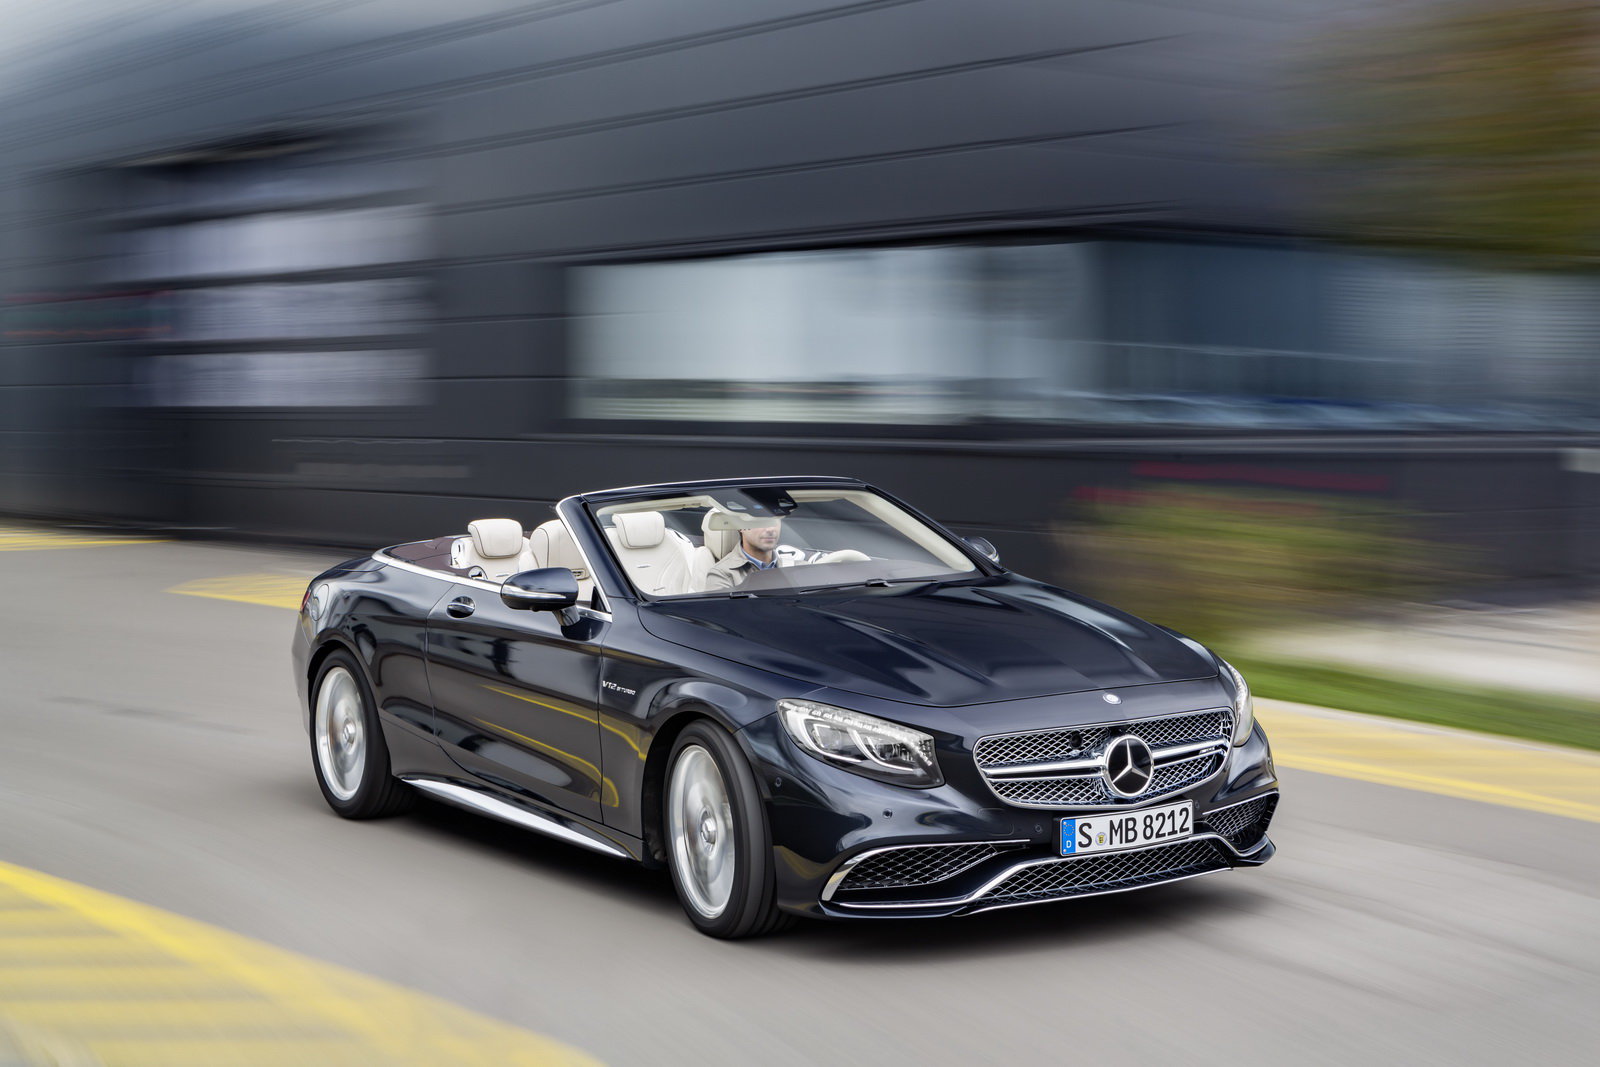 To nejluxusnější, co dokáže AMG nabídnout, Mercedes-AMG S 65 Cabriolet.